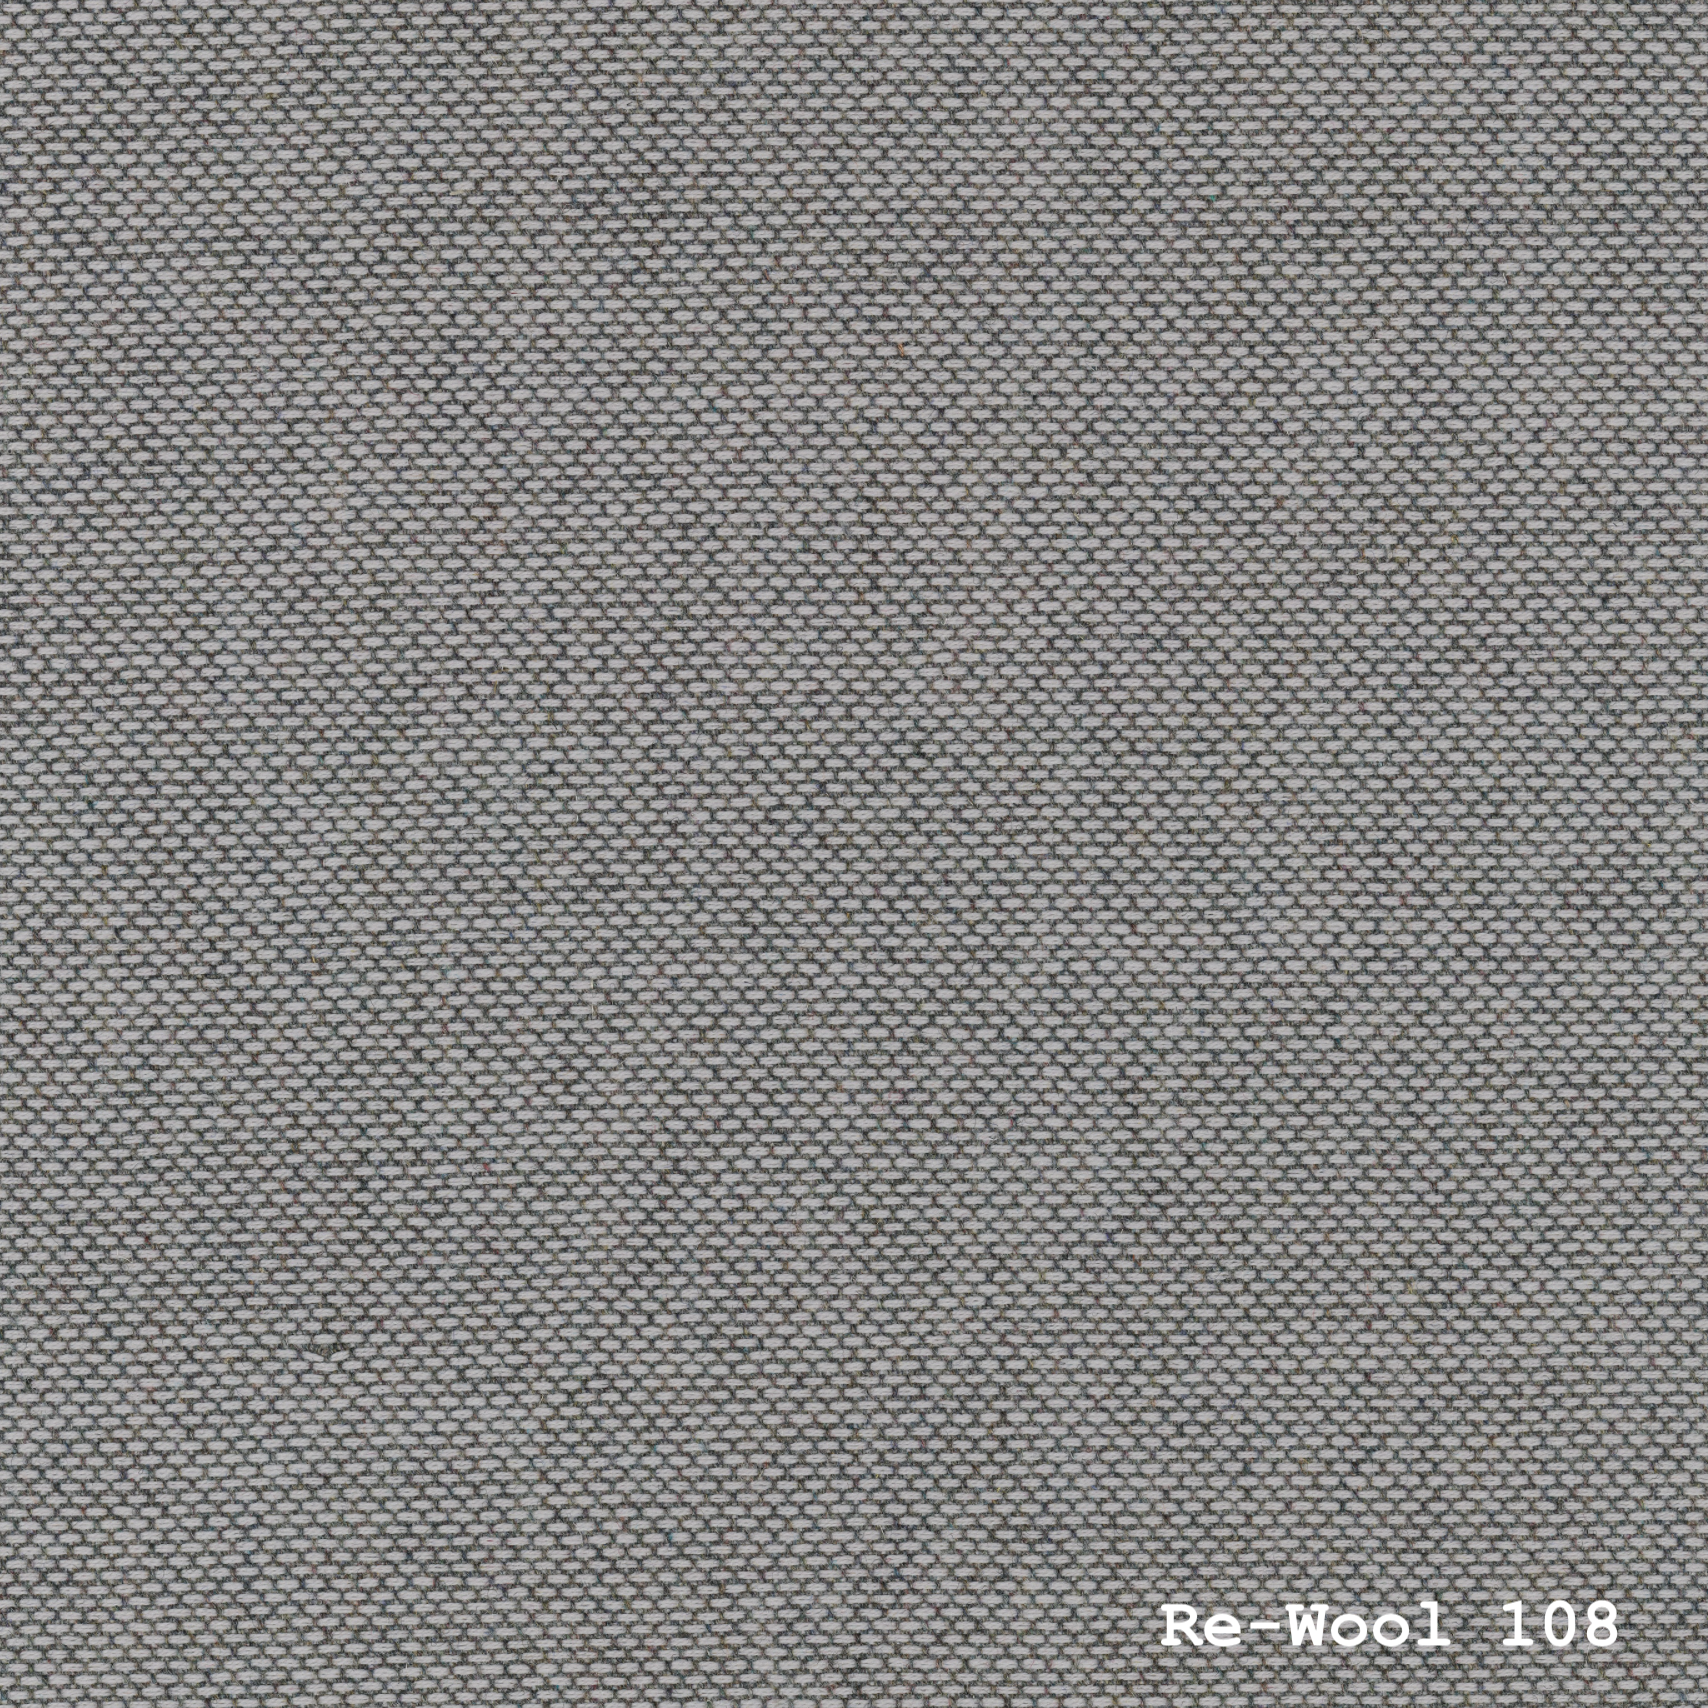 Re-wool 108 fra Kvadrat